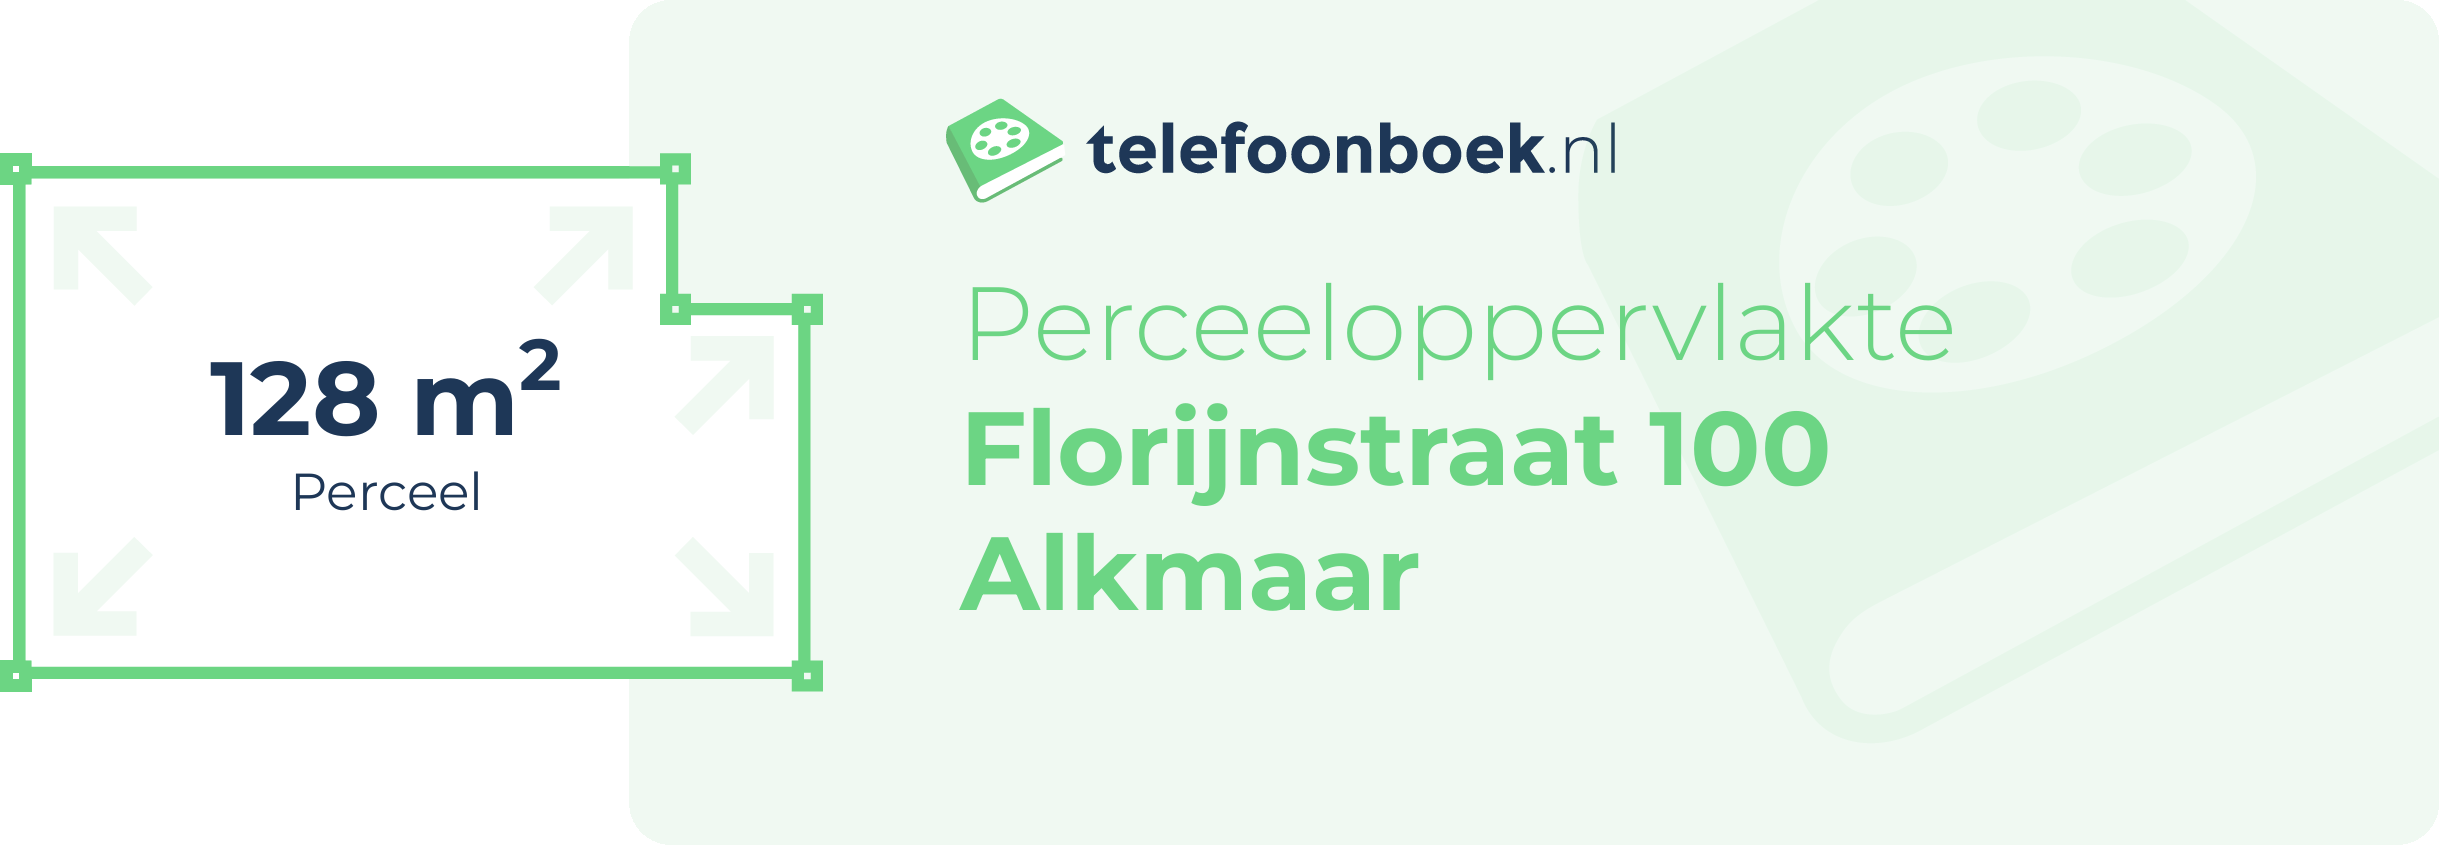 Perceeloppervlakte Florijnstraat 100 Alkmaar